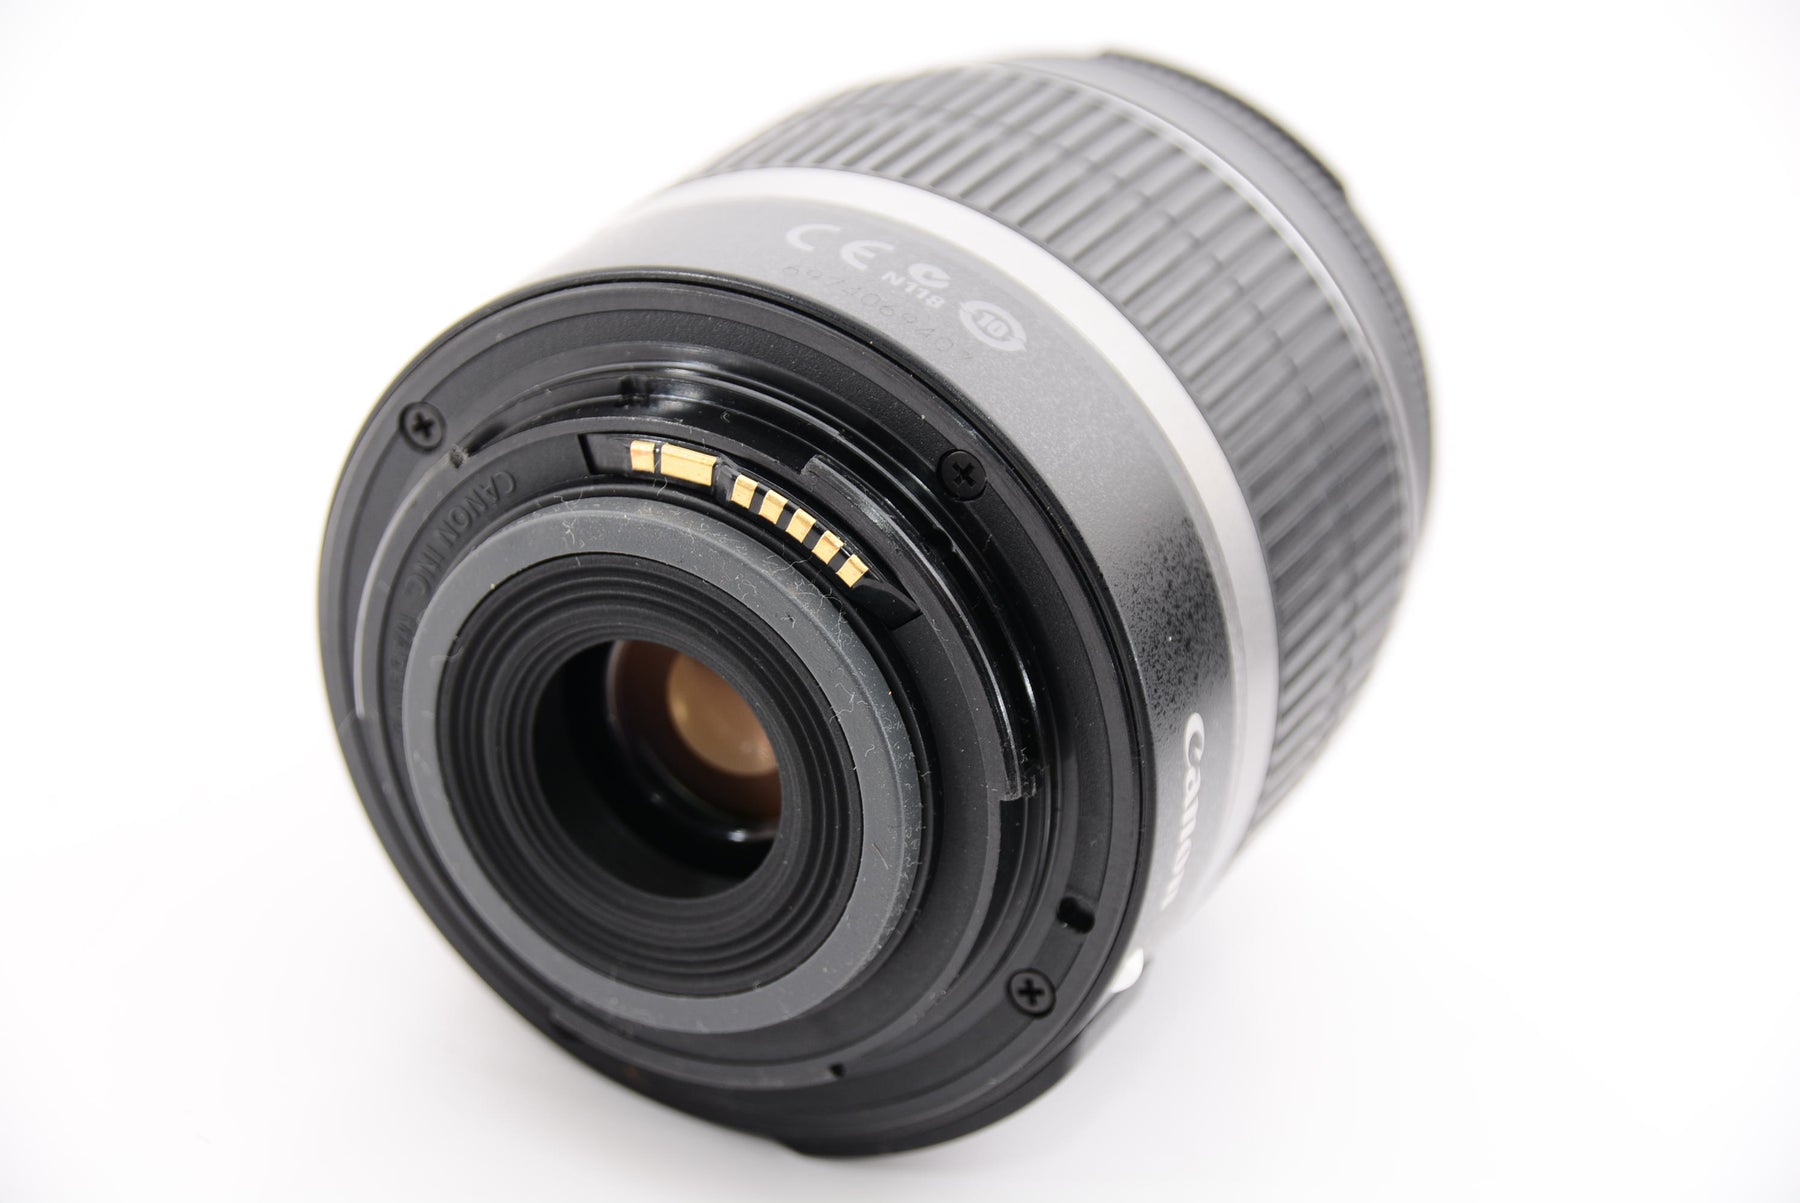 Canon デジタル一眼レフカメラ EOS Kiss X4 EF-S 18-55 IS レンズキット KISSX4-1855ISLK - 2